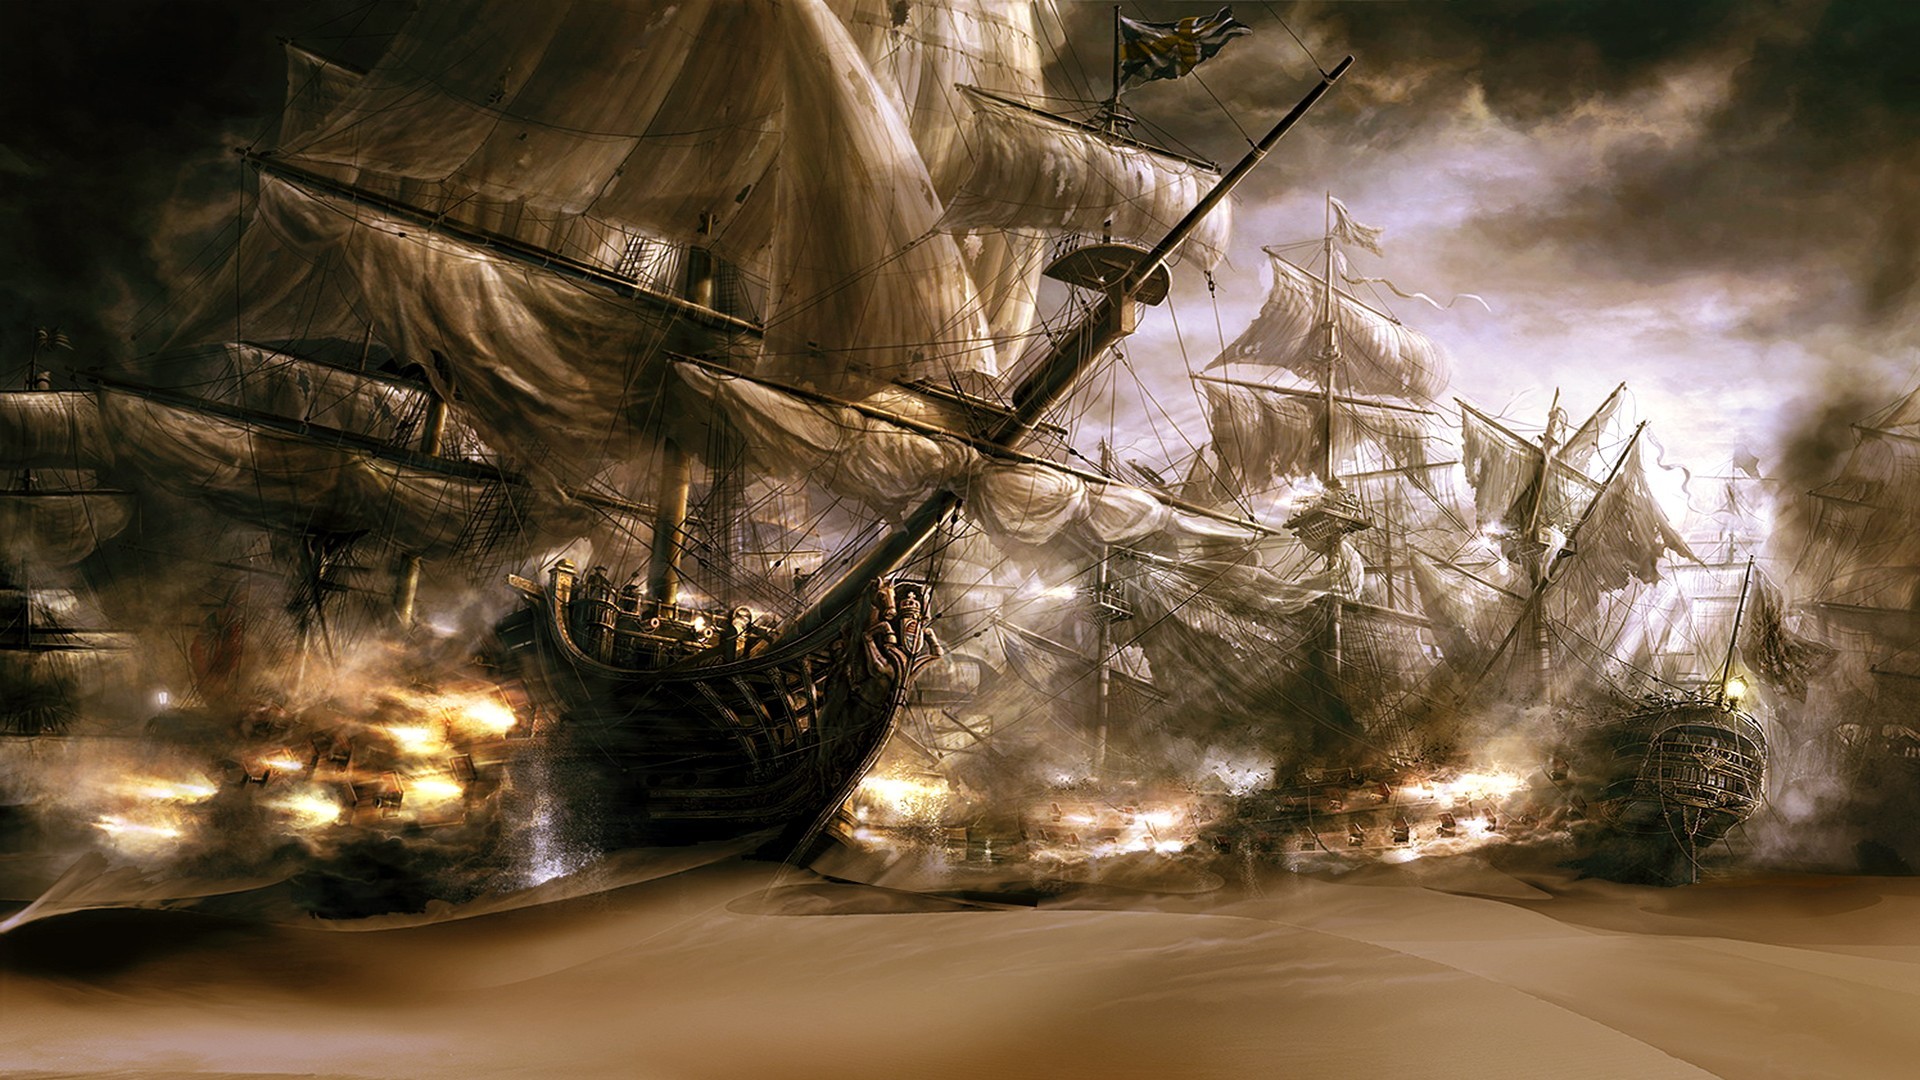 Pirate ships in the desert sand Wallpaper 4982